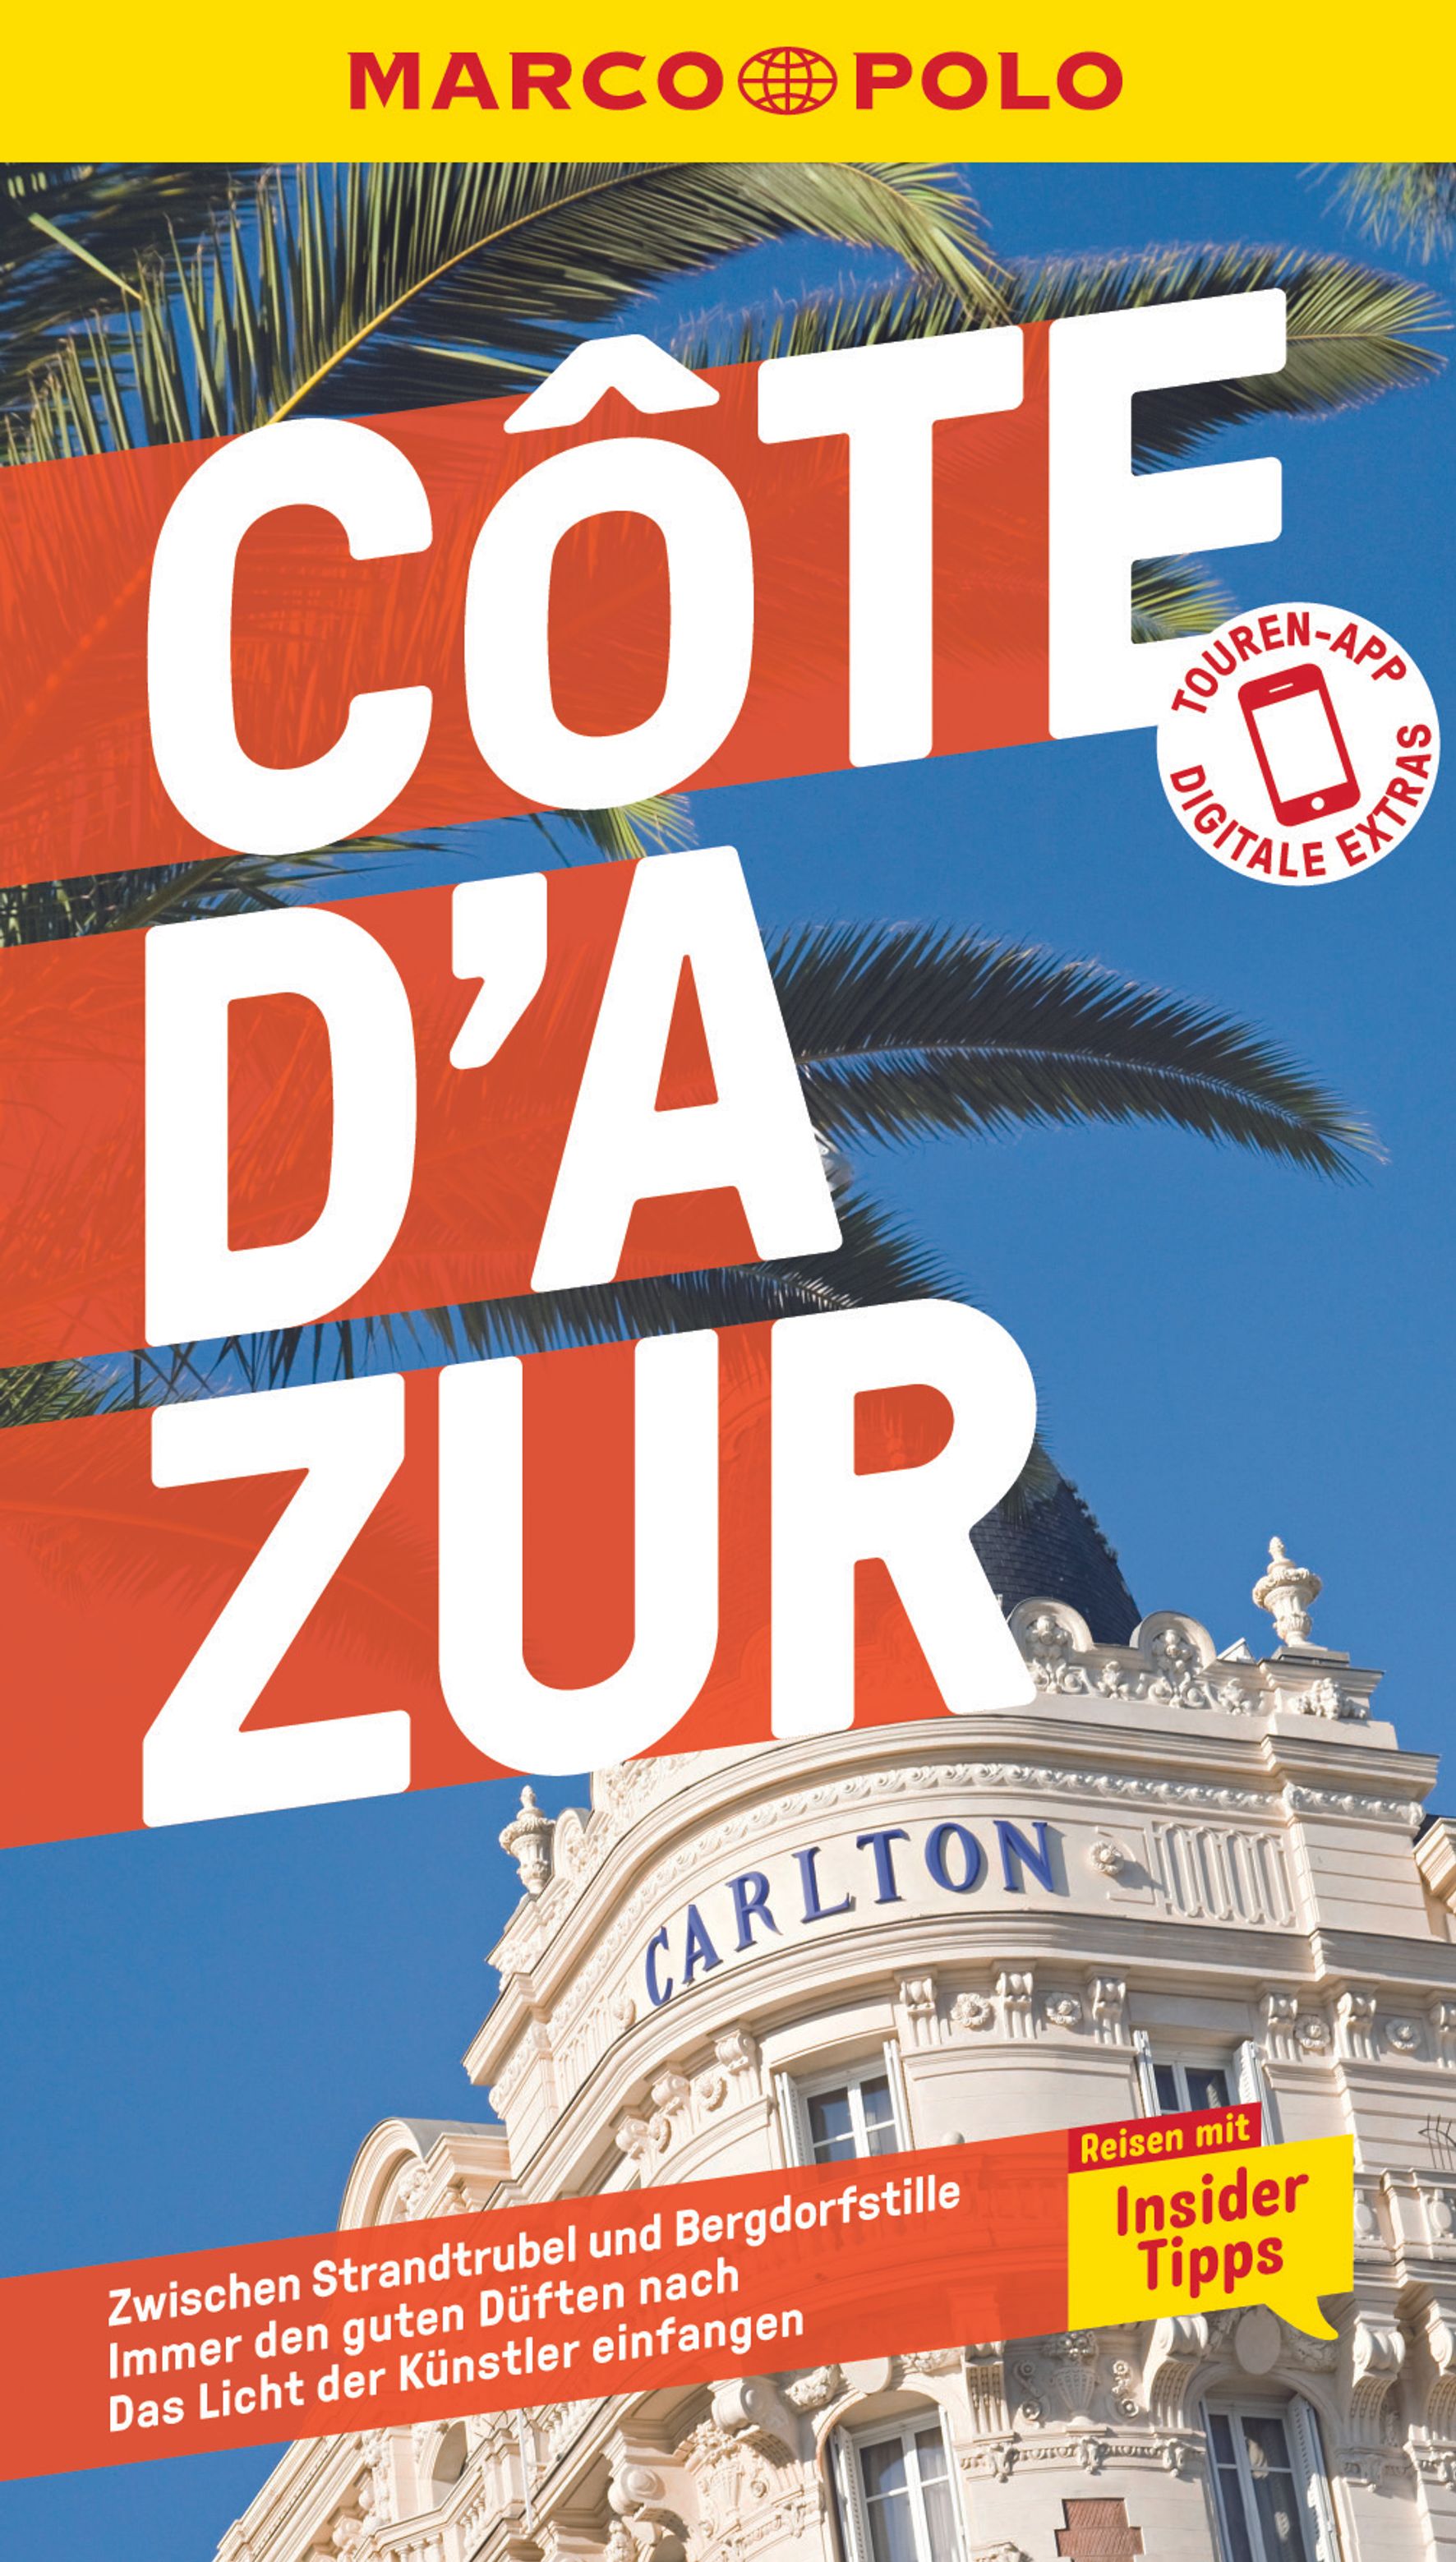 MAIRDUMONT Cote d'Azur (eBook)